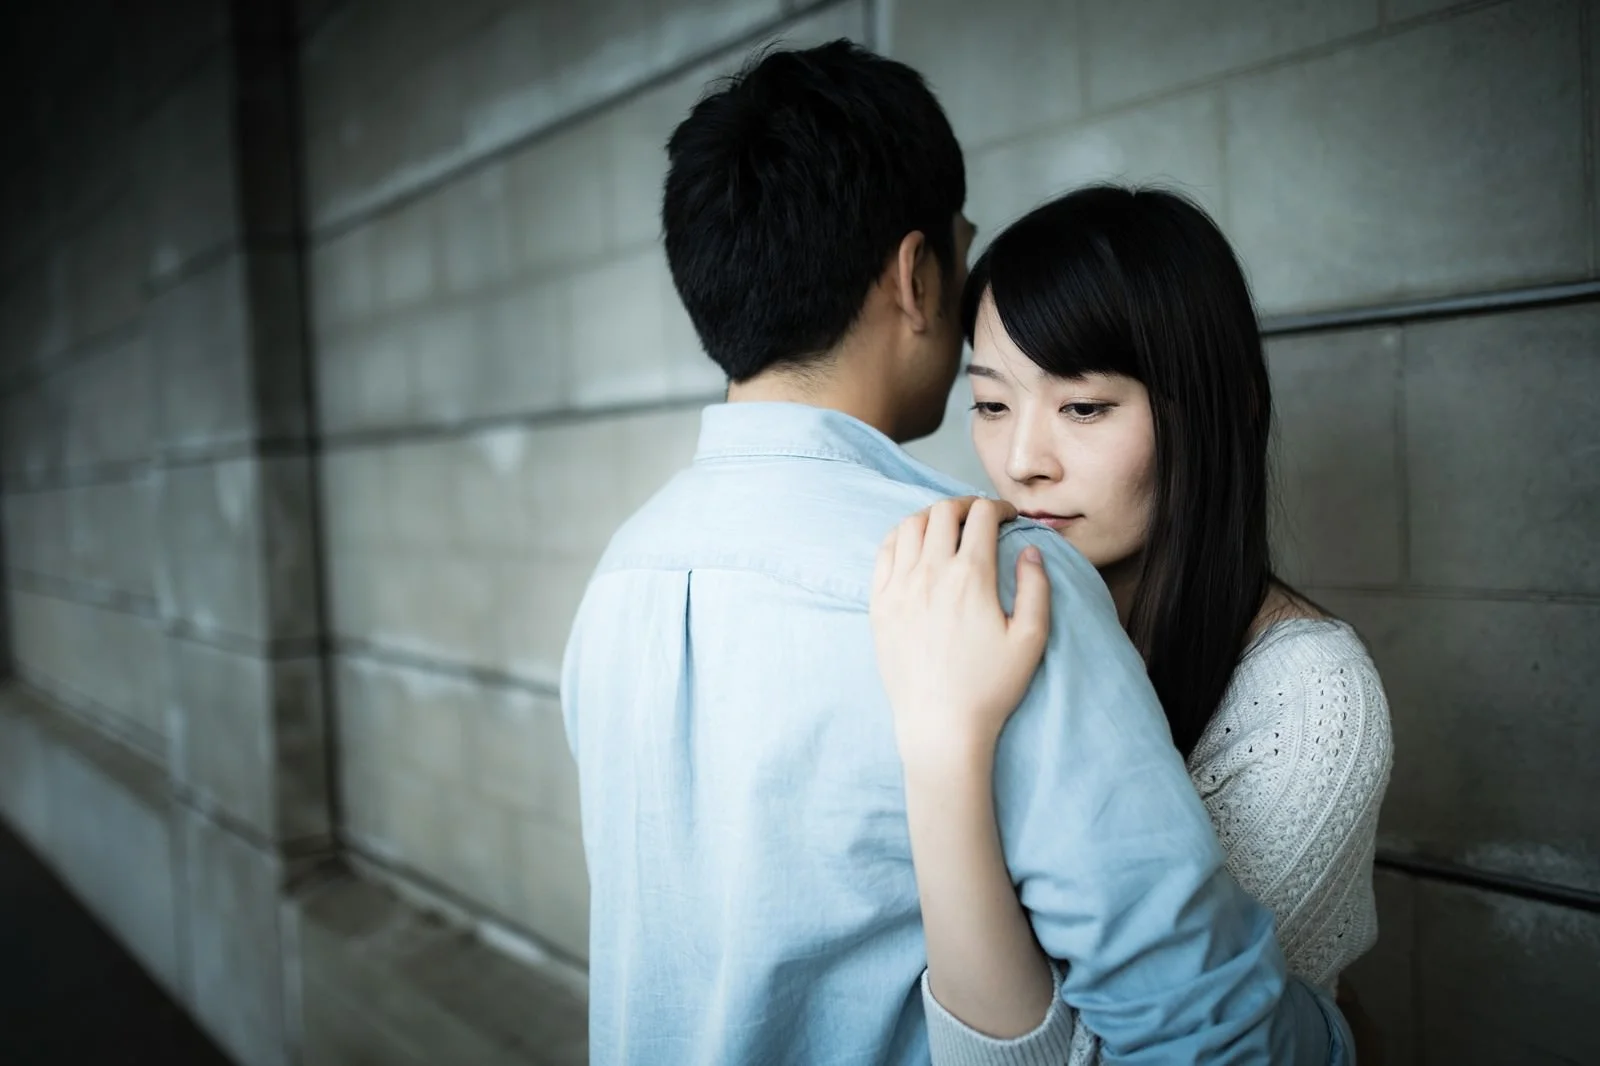 Um estudo conduzido no Japão revelou que mais de 40% dos homens na faixa dos vinte anos são virgens e o que isso impacta no país.